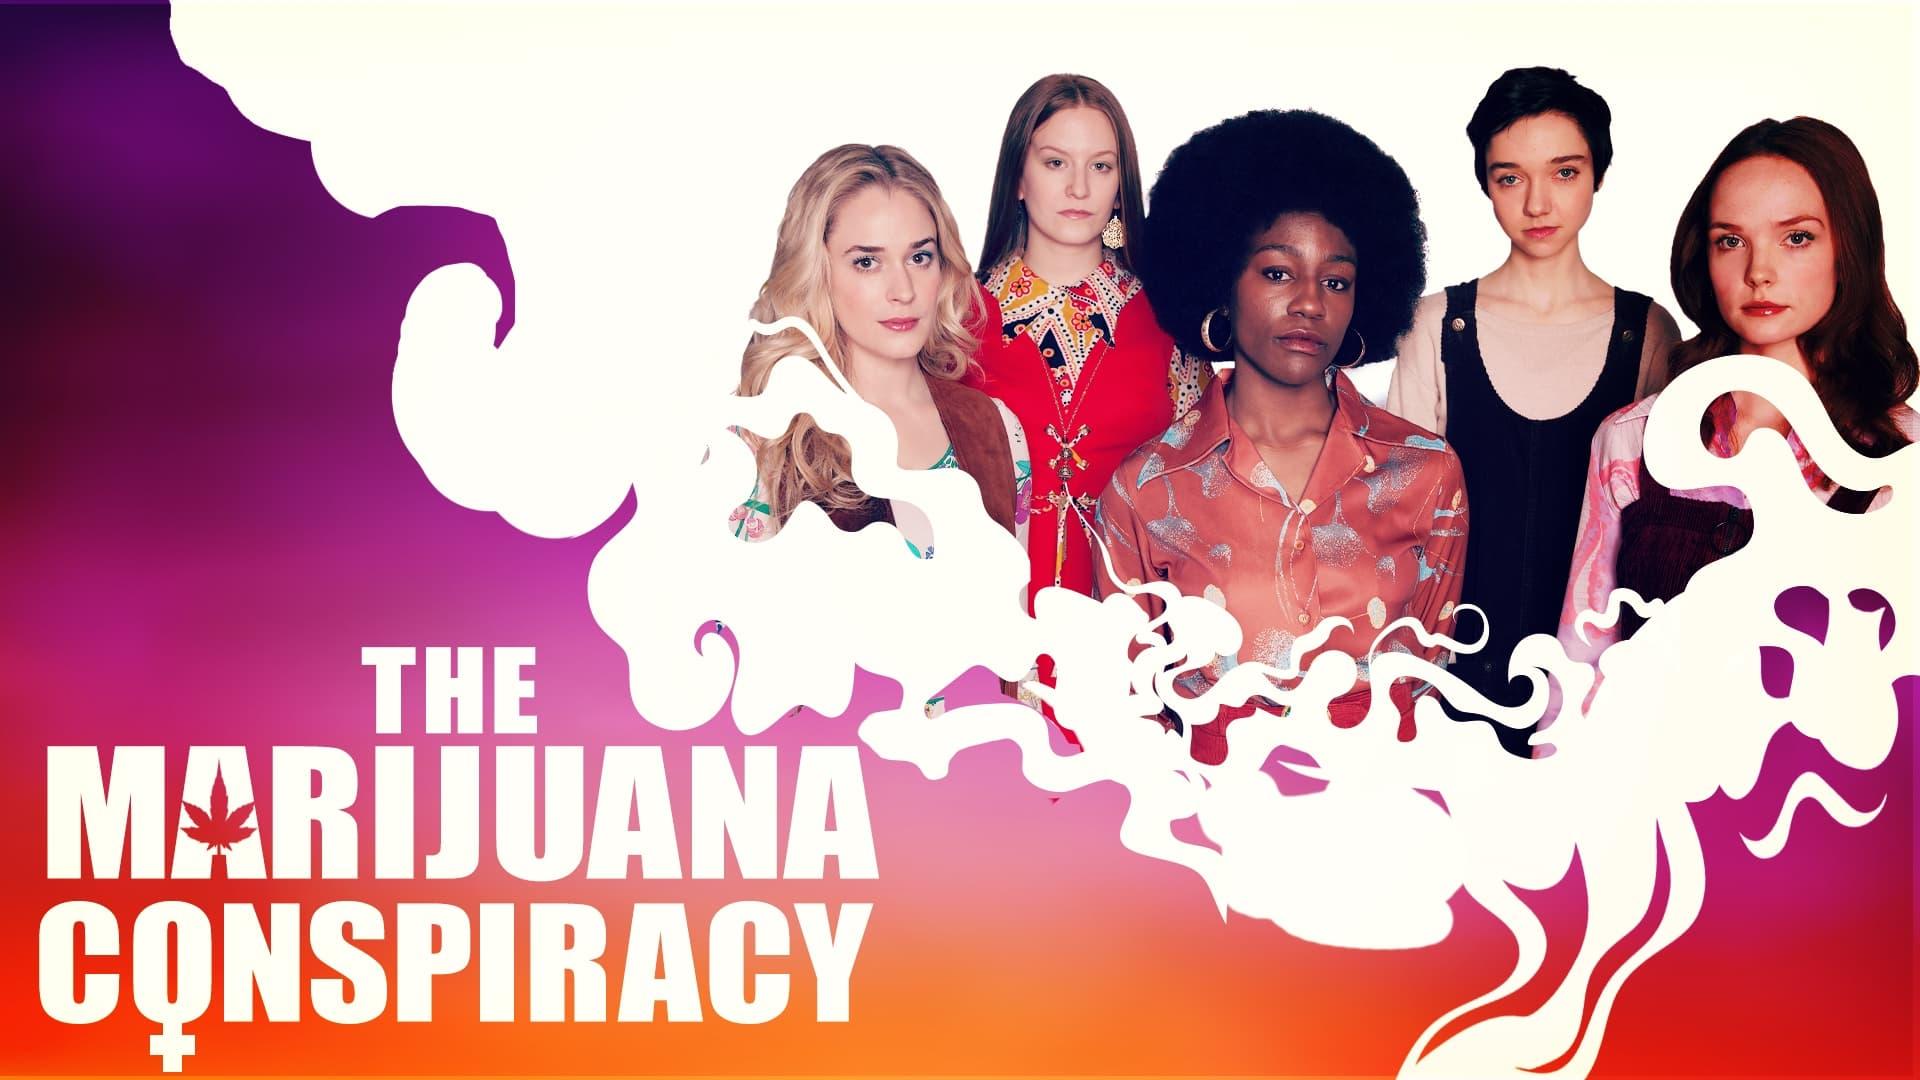 The Marijuana Conspiracy backdrop